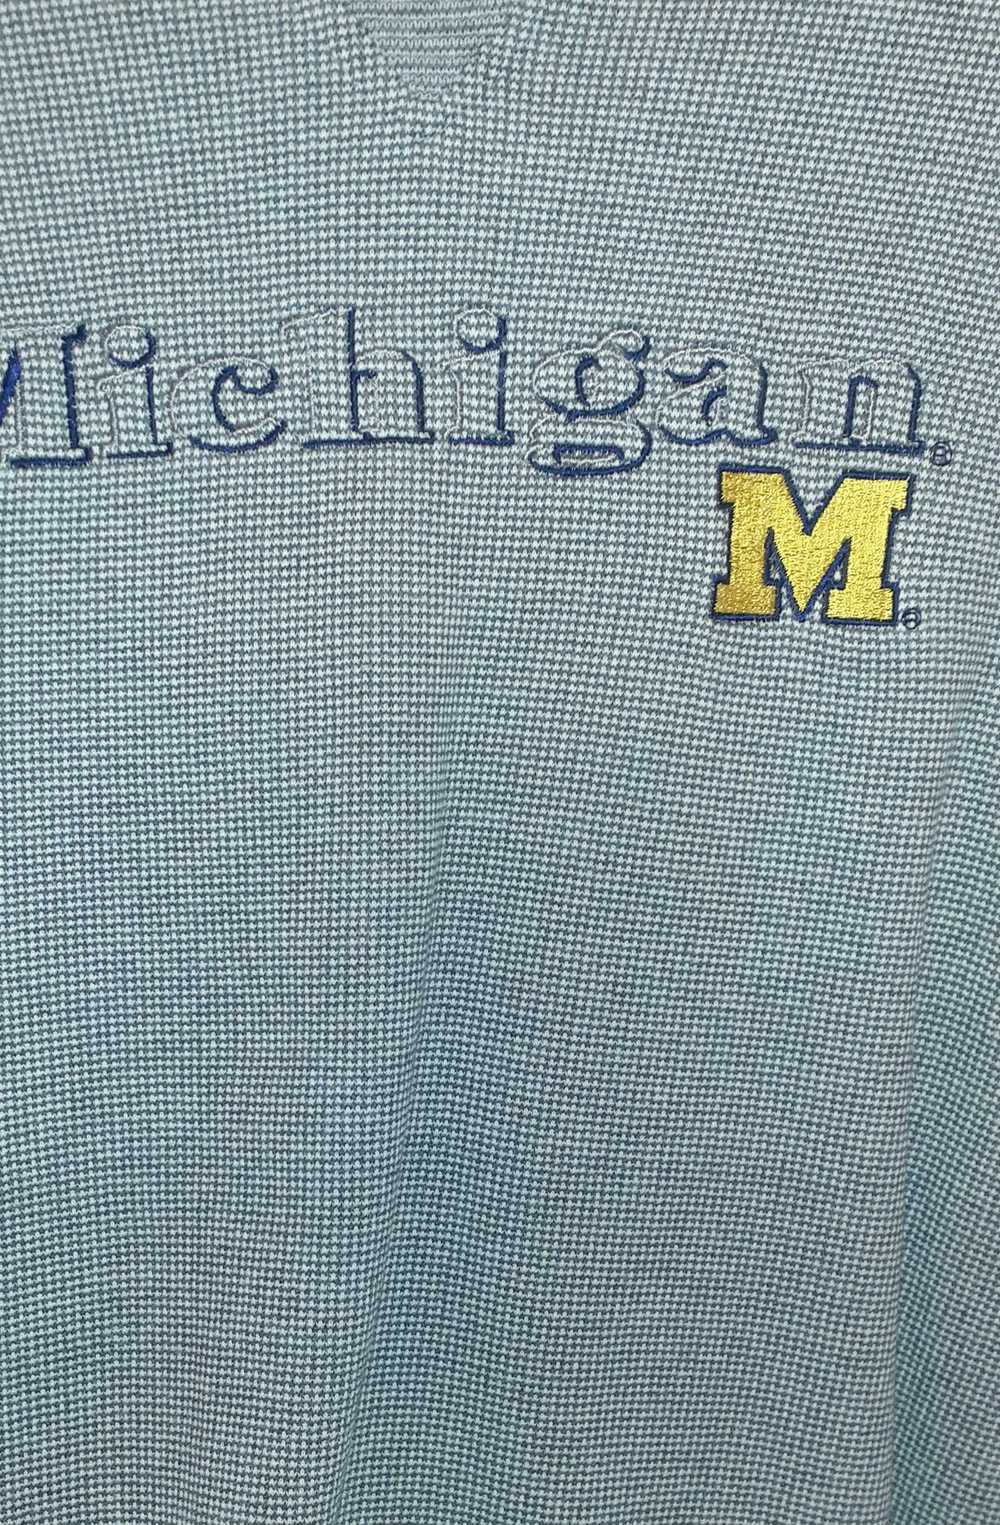 Vintage Vintage Michigan Crewneck - image 3